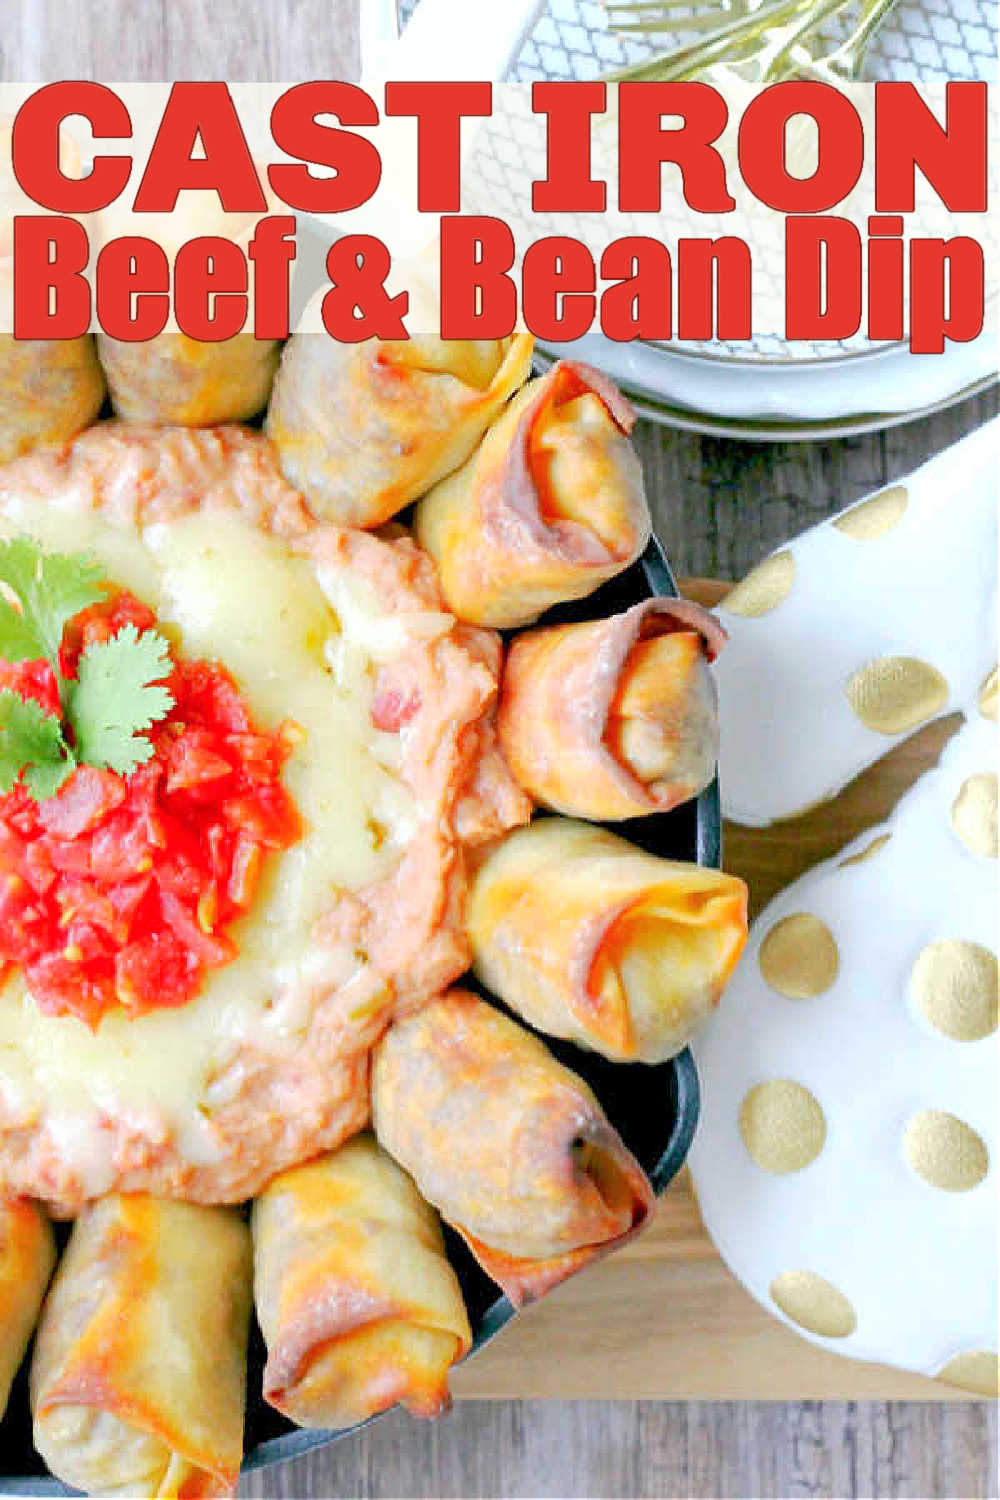 Skillet Bean Dip | Foodtastic Mom #skilletbeandip #beanrecipes #mexicanrecipes